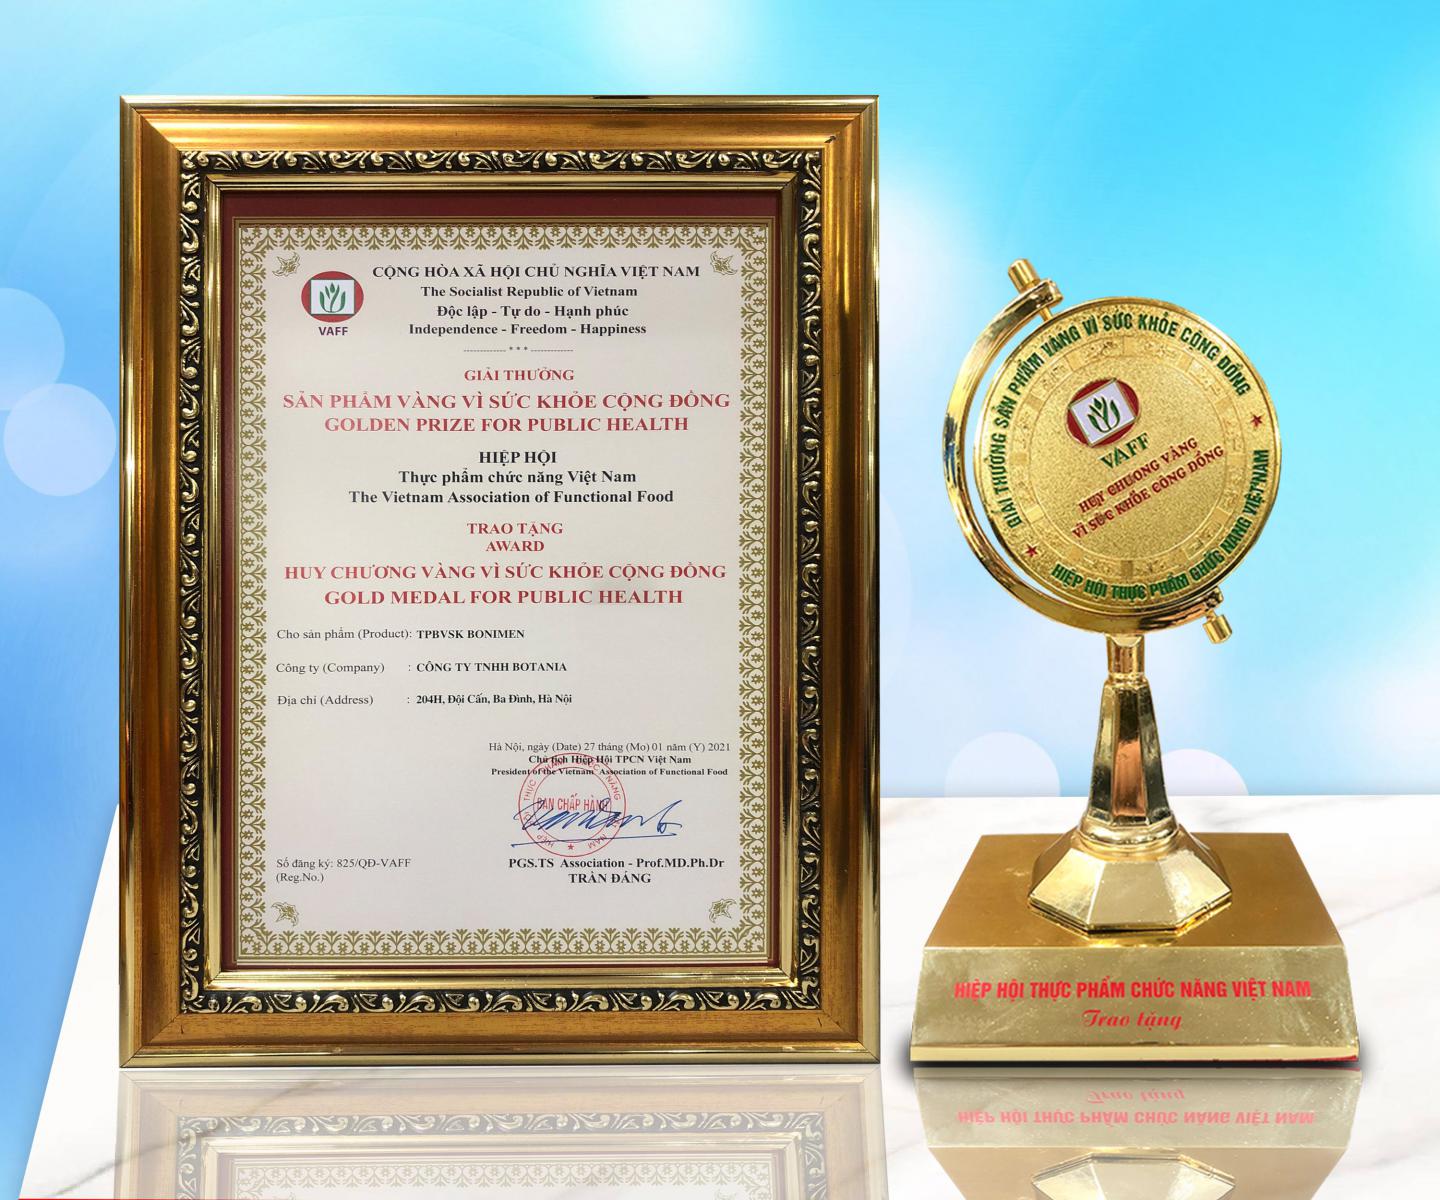 BoniMen vinh dự đón nhận giải thưởng “Sản phẩm vàng vì sức khỏe cộng đồng” lần thứ 3